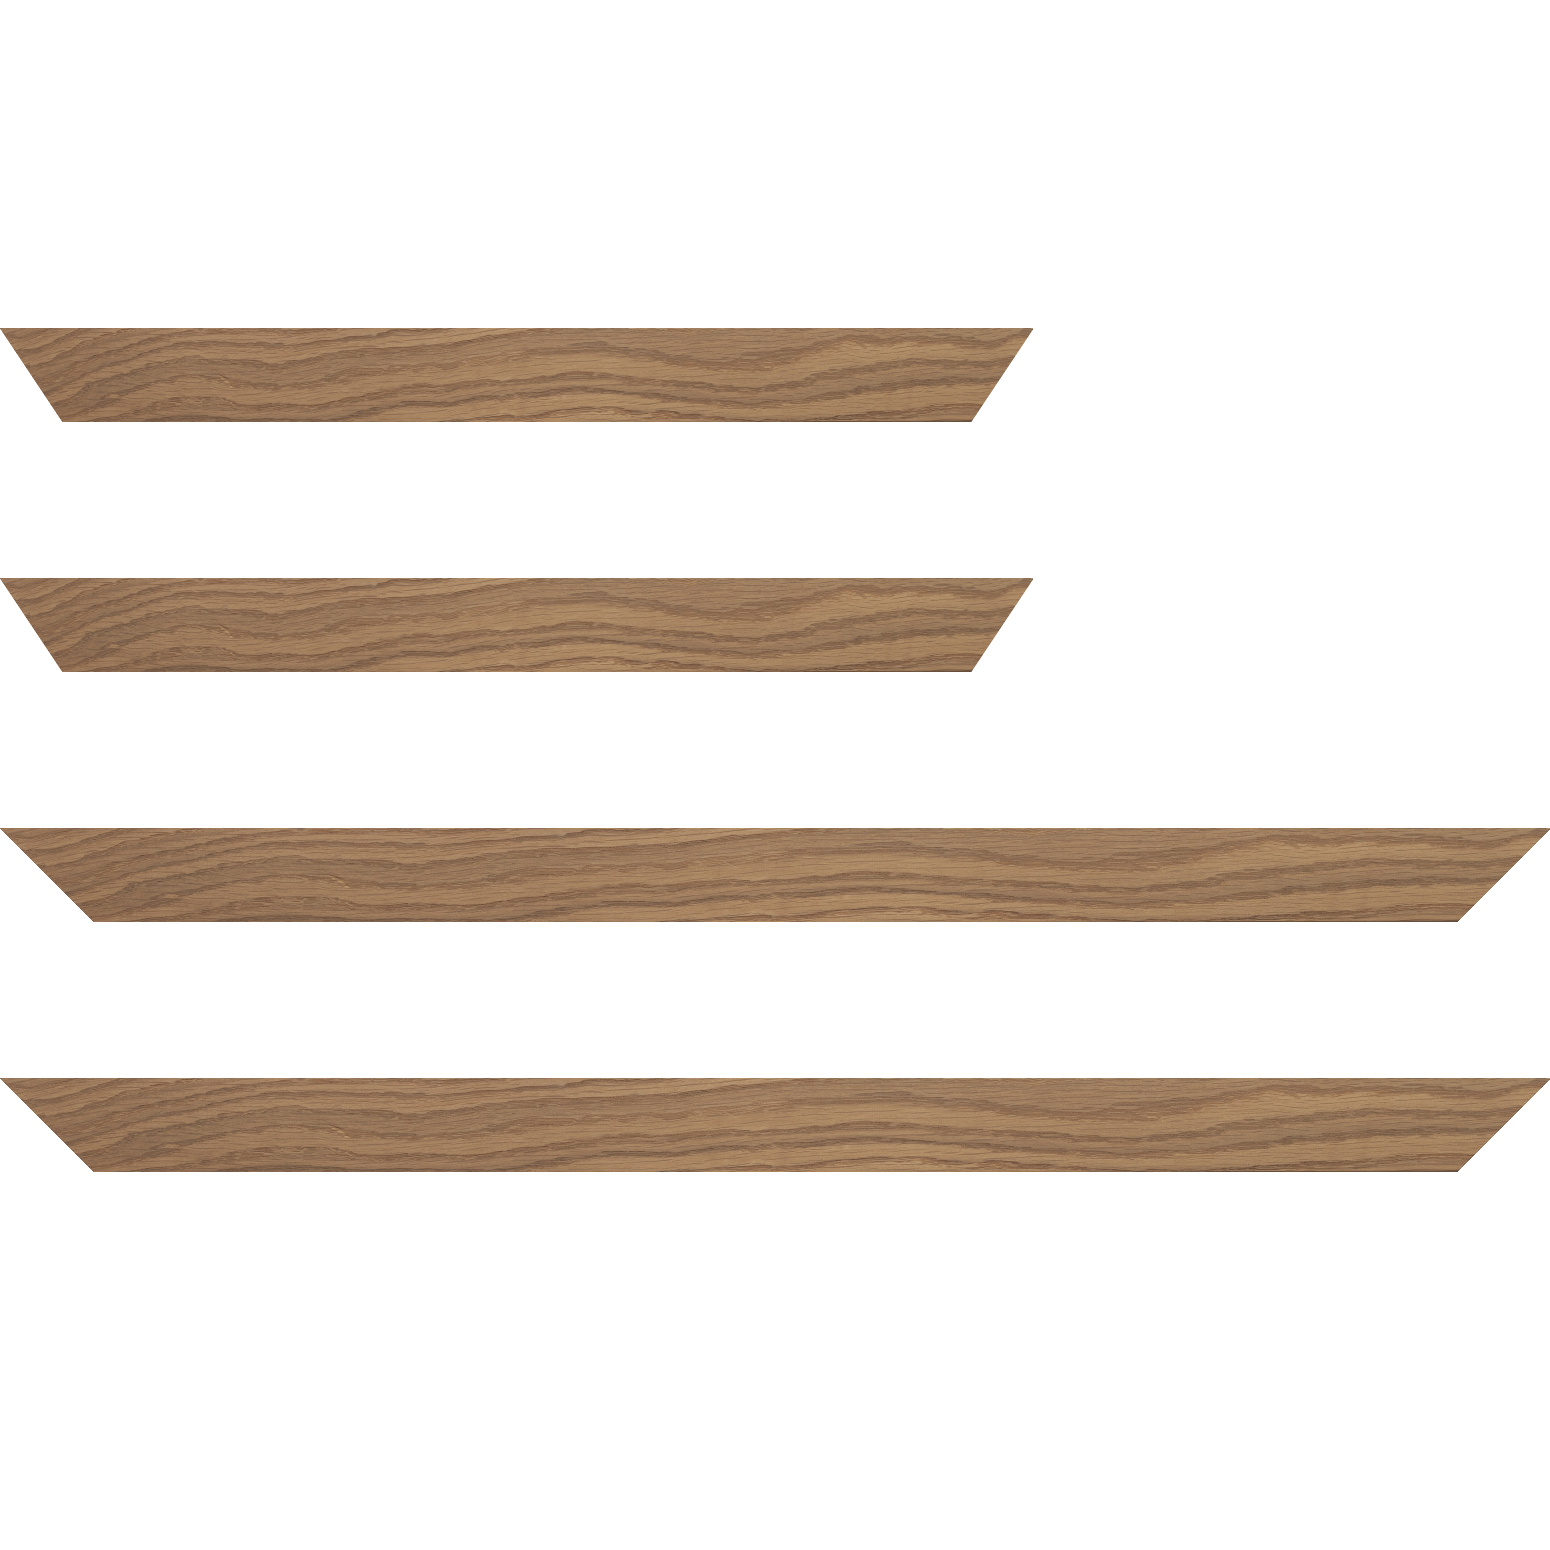 Baguette bois profil plat largeur 4cm chêne massif naturel (non vernis) - 59.4x84.1